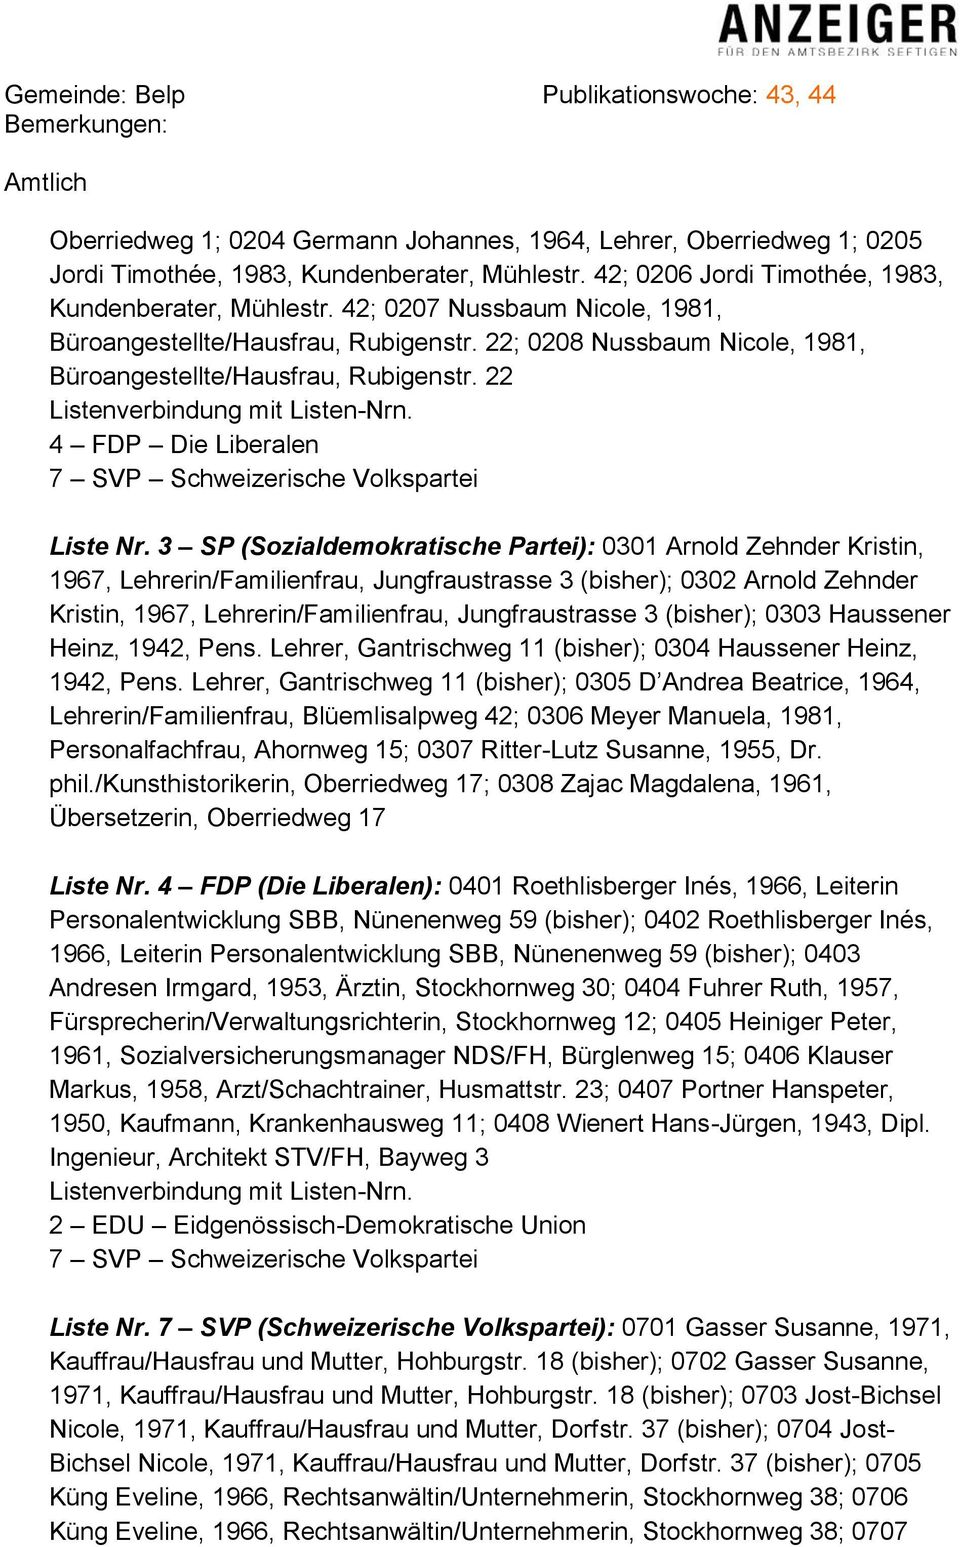 3 SP (Sozialdemokratische Partei): 0301 Arnold Zehnder Kristin, 1967, Lehrerin/Familienfrau, Jungfraustrasse 3 (bisher); 0302 Arnold Zehnder Kristin, 1967, Lehrerin/Familienfrau, Jungfraustrasse 3